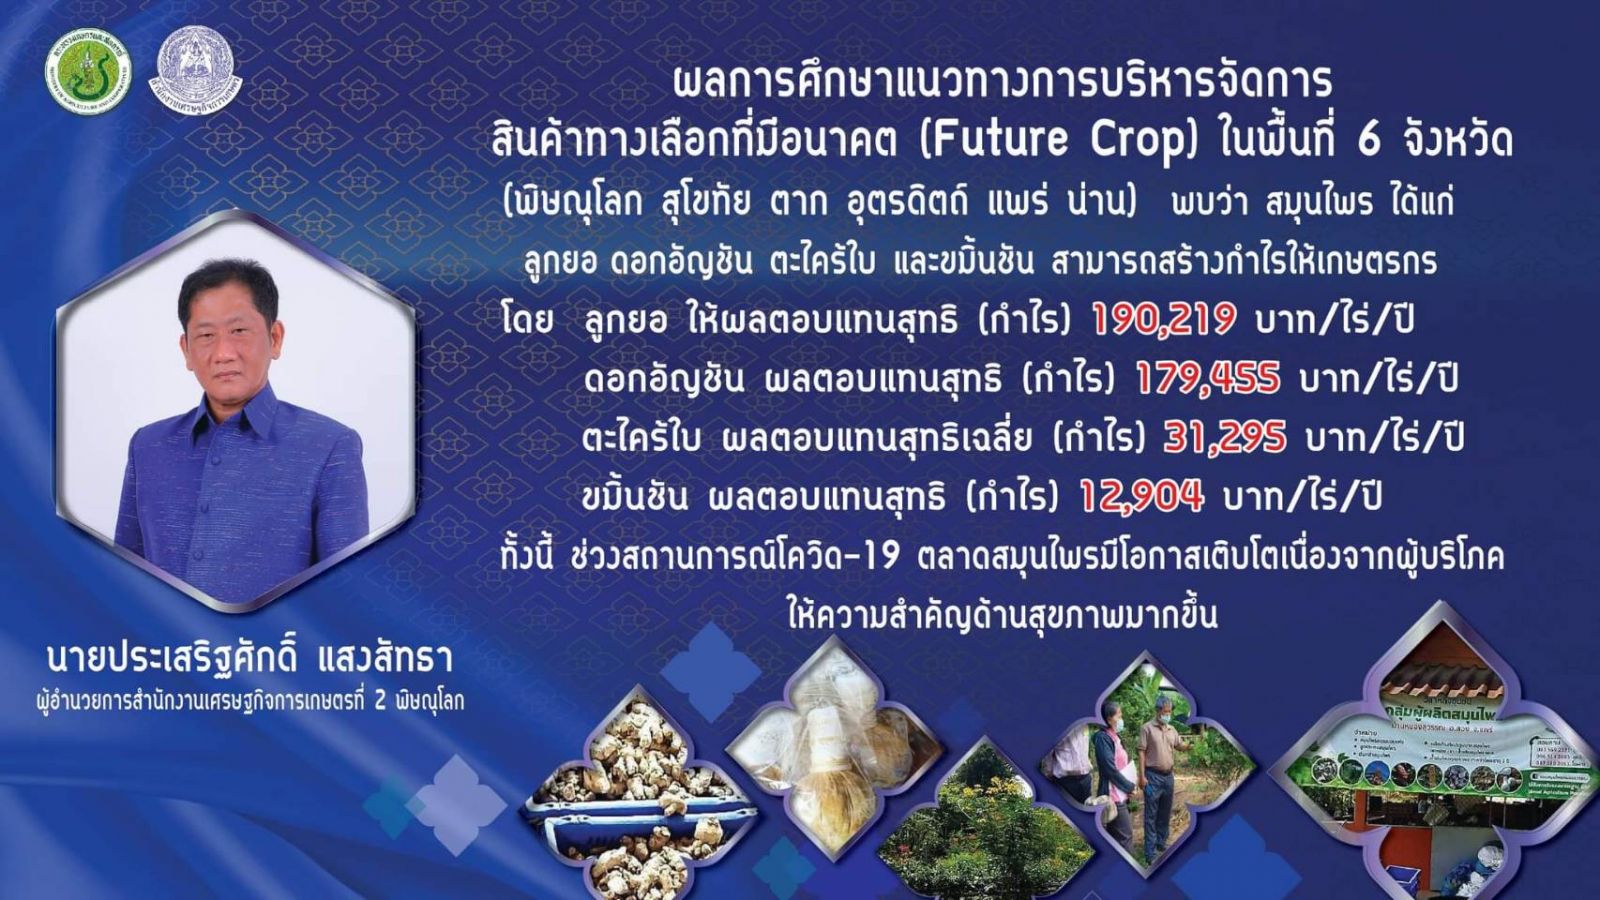 สศท.2 ชู “สมุนไพร” สินค้า Future Crop สร้างรายได้ โอกาสโตช่วงโควิด-19 แนะเกษตรกร ผู้ประกอบการ ให้ความสำคัญคุณภาพและมาตรฐานสินค้า